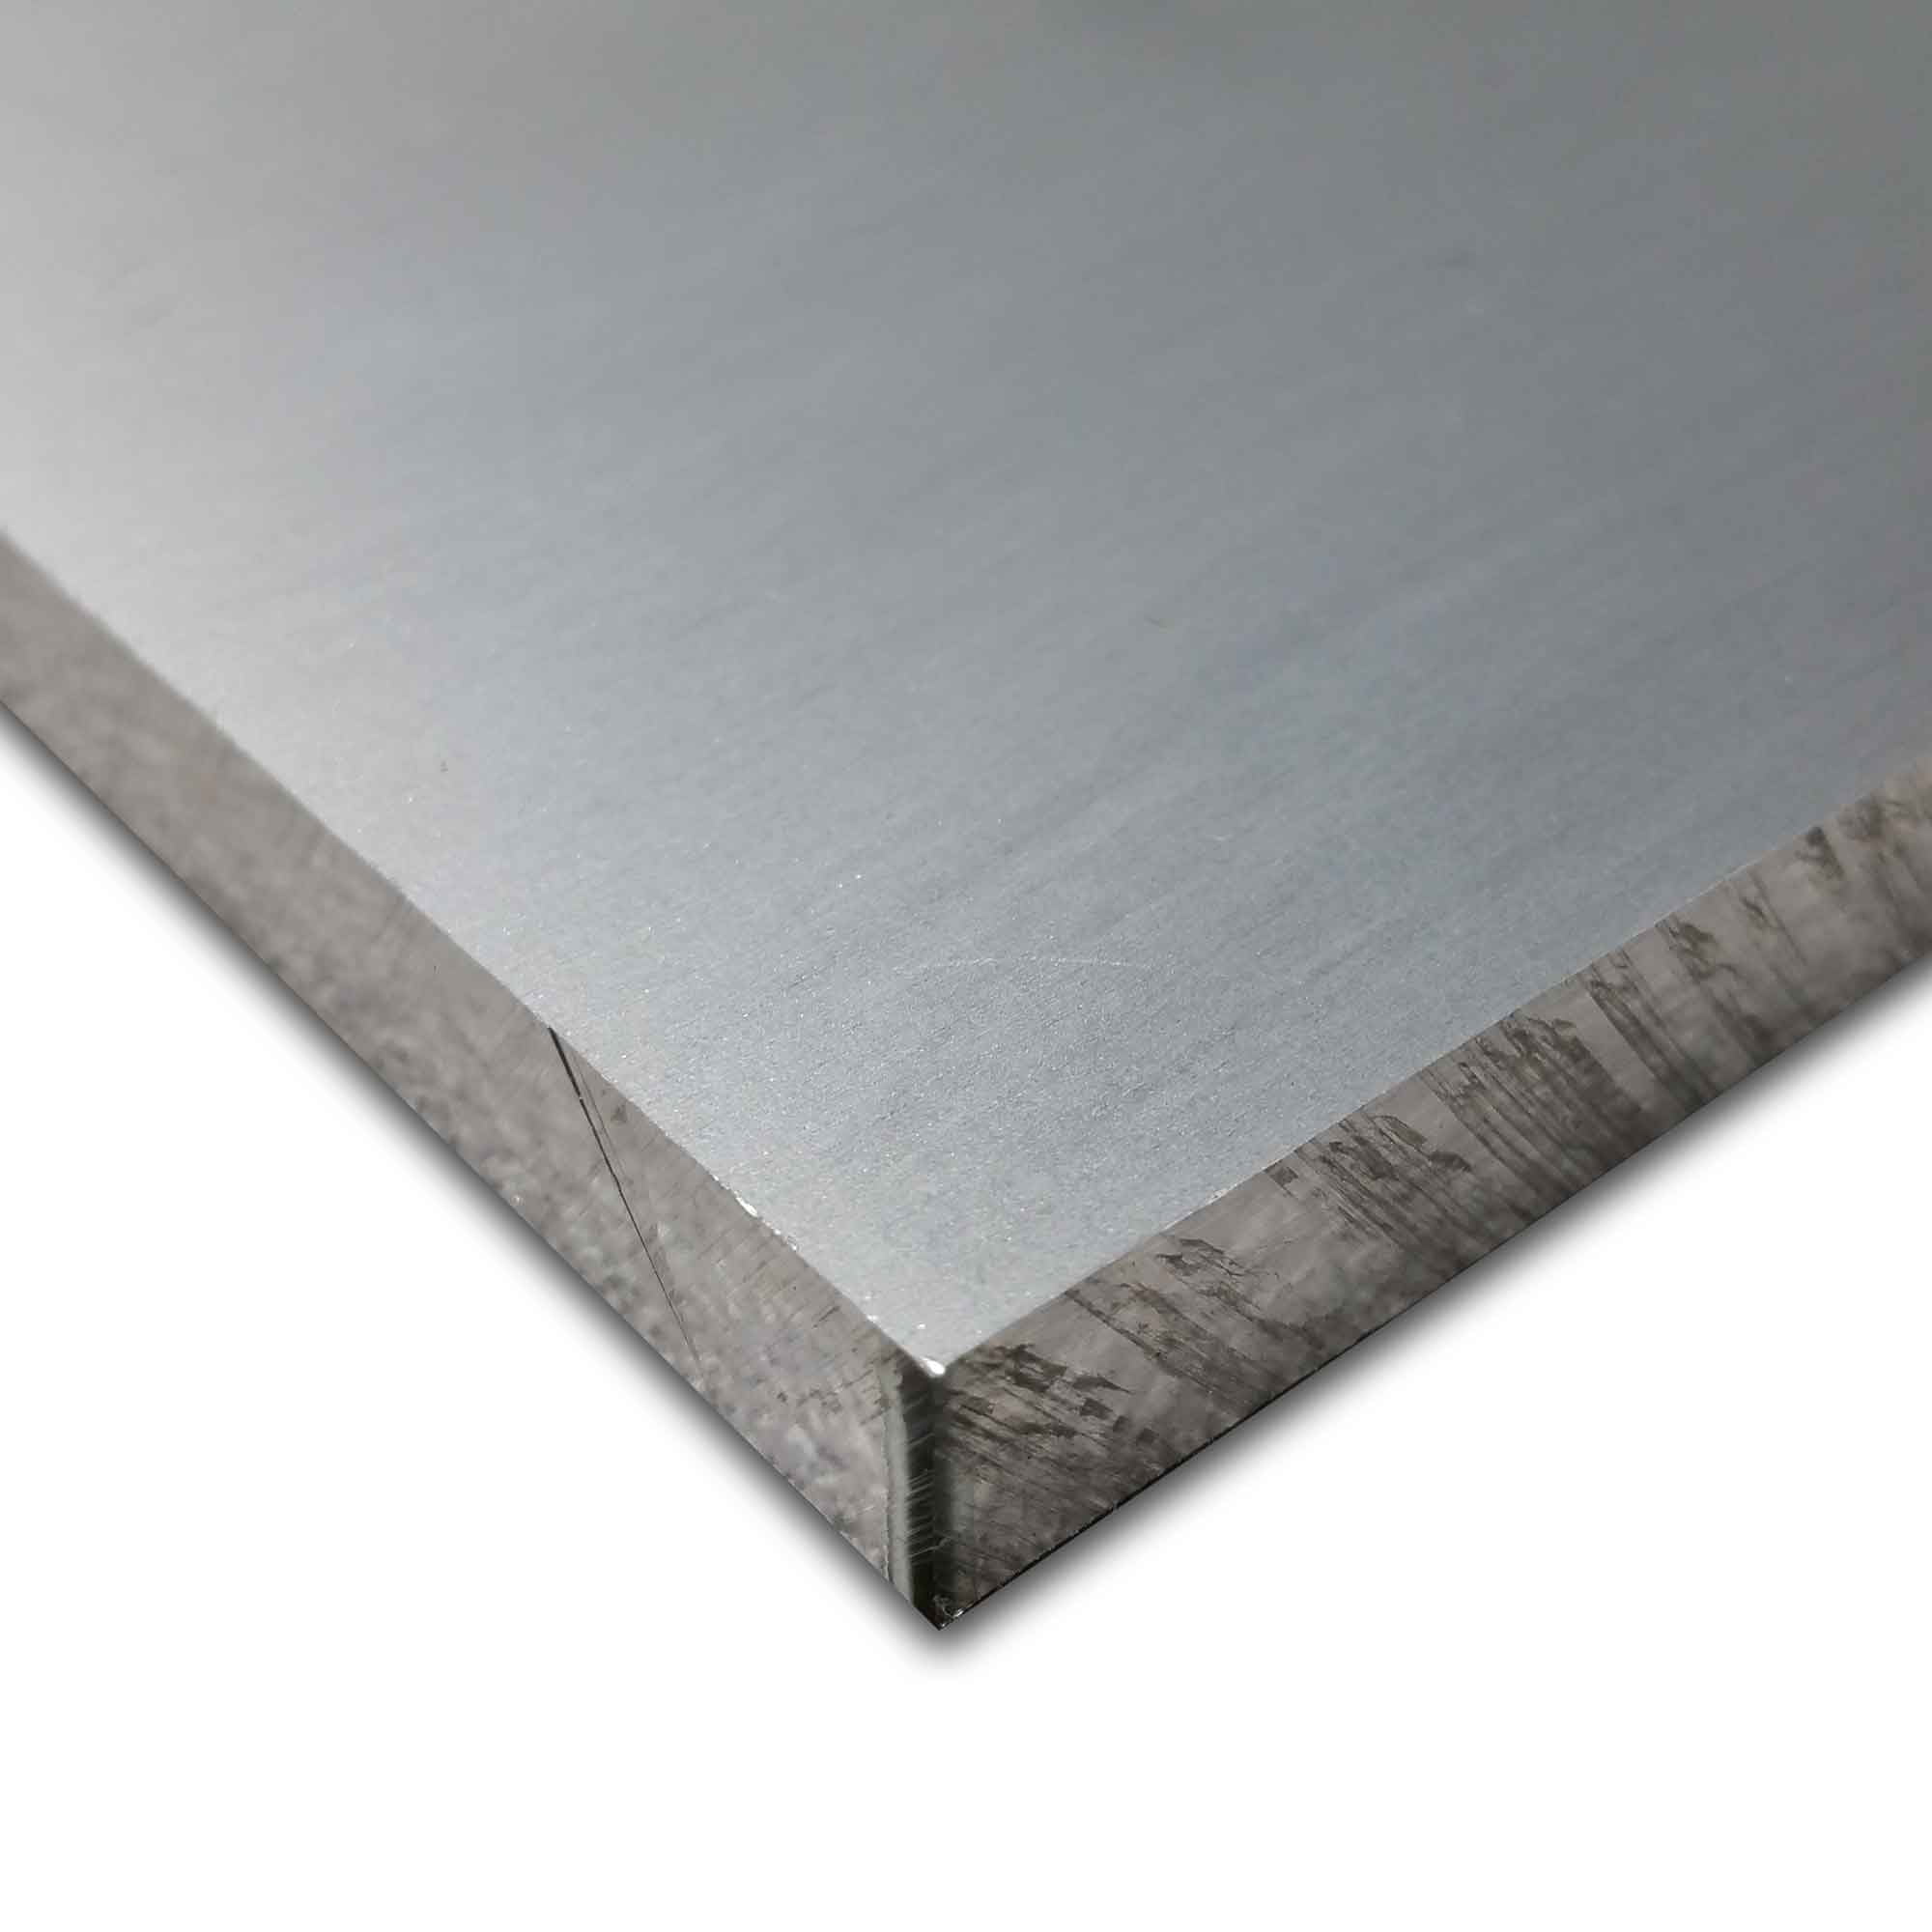 0.625 6" Length 6061 Plate T6511 Mill Stock 5/8" x 4" Aluminum Flat Bar